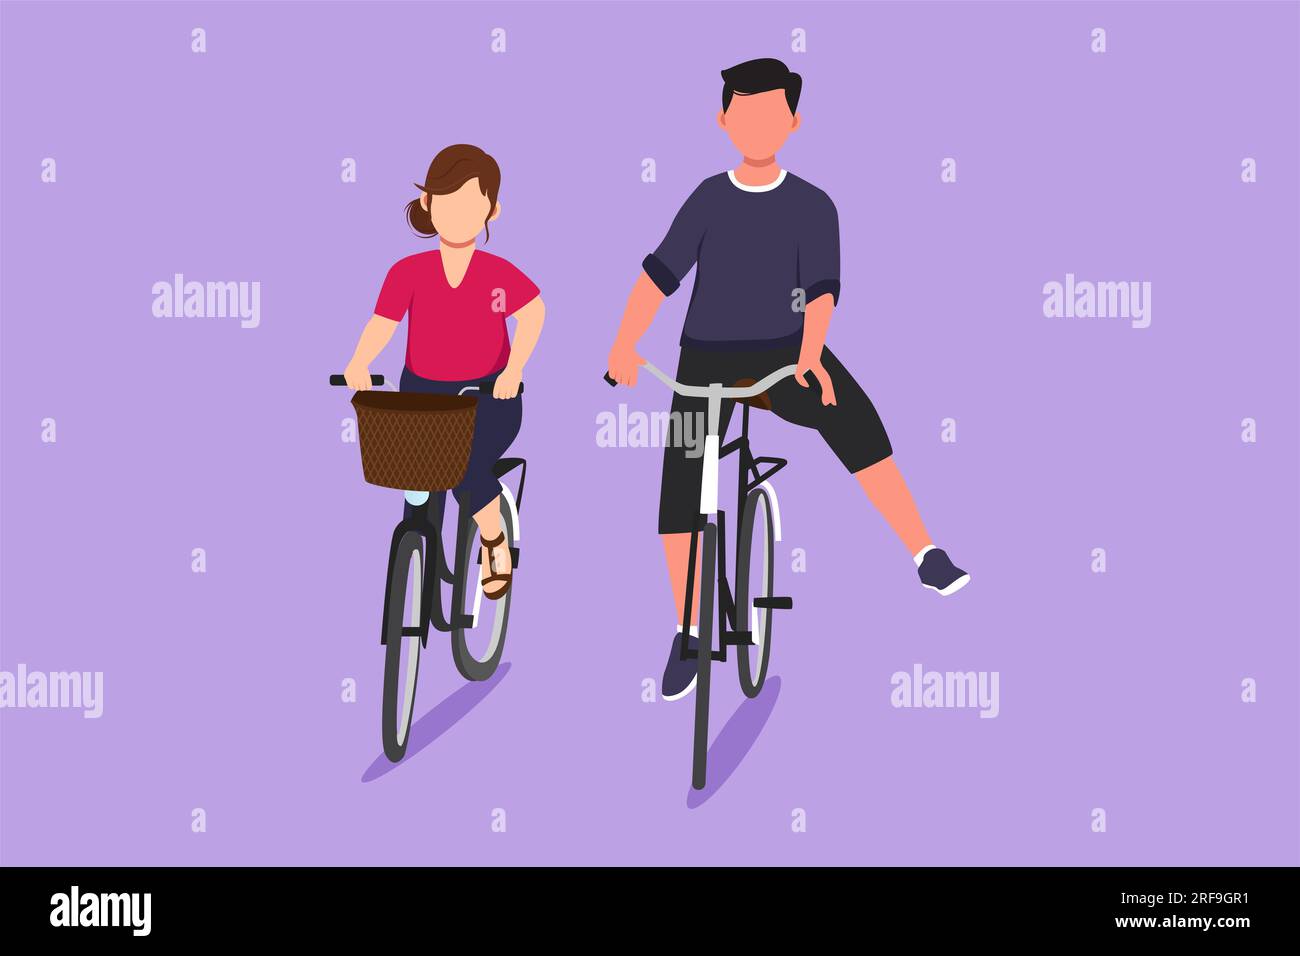 Eine Figur, ein lustiges, junges Paar, das Fahrrad fährt. Romantisches  Teenager-Paar mit dem Fahrrad im Stadtpark. Junger Mann und verliebte Frau.  Glücklich Stockfotografie - Alamy